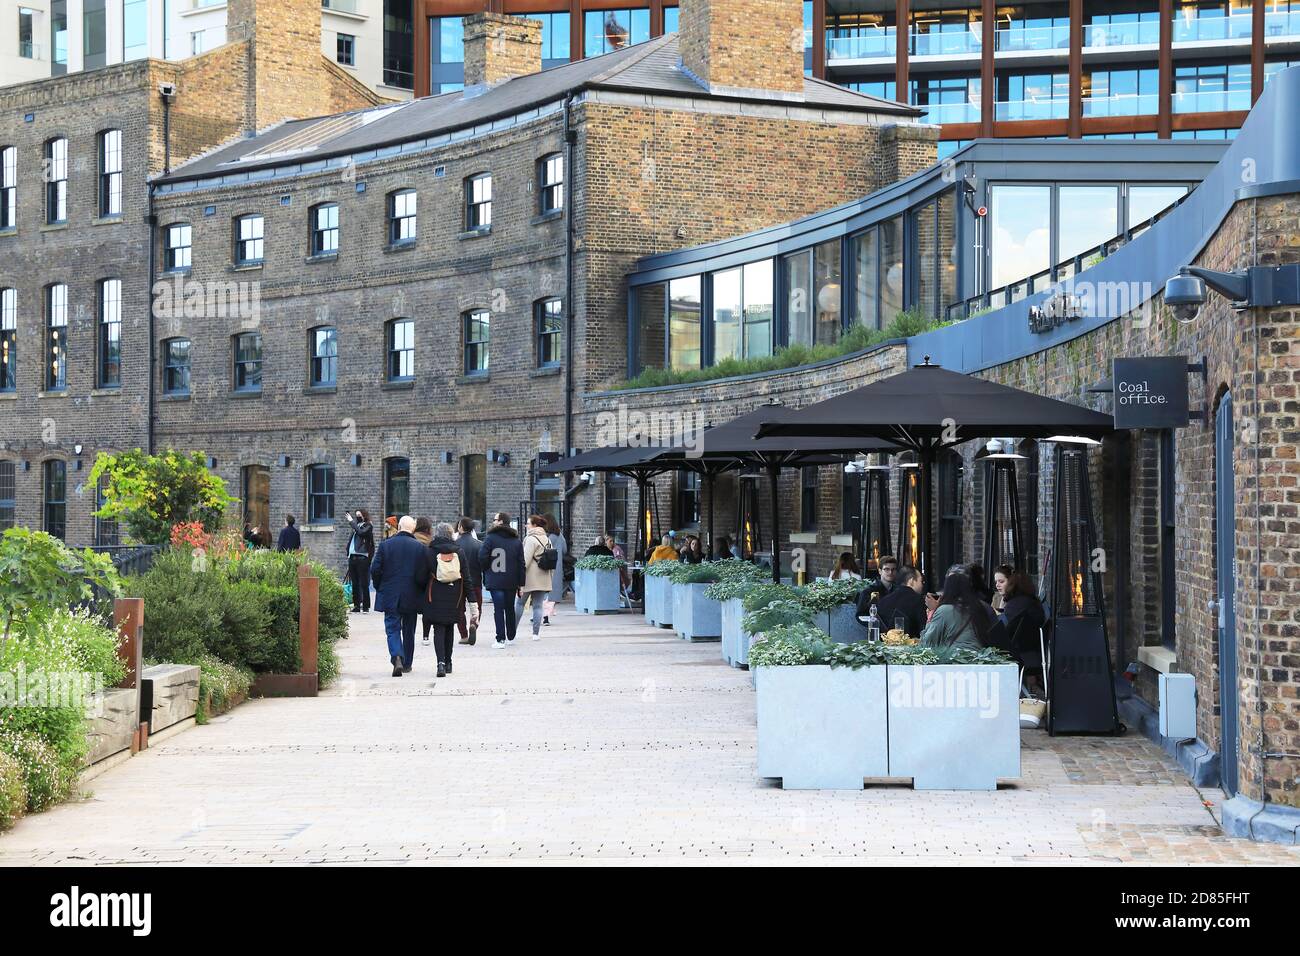 Restaurant Coal Office sur Bagley Walk, CDY, une collaboration créative entre le designer britannique Tom Dixon et le chef Asaf granit, à Londres, au Royaume-Uni Banque D'Images